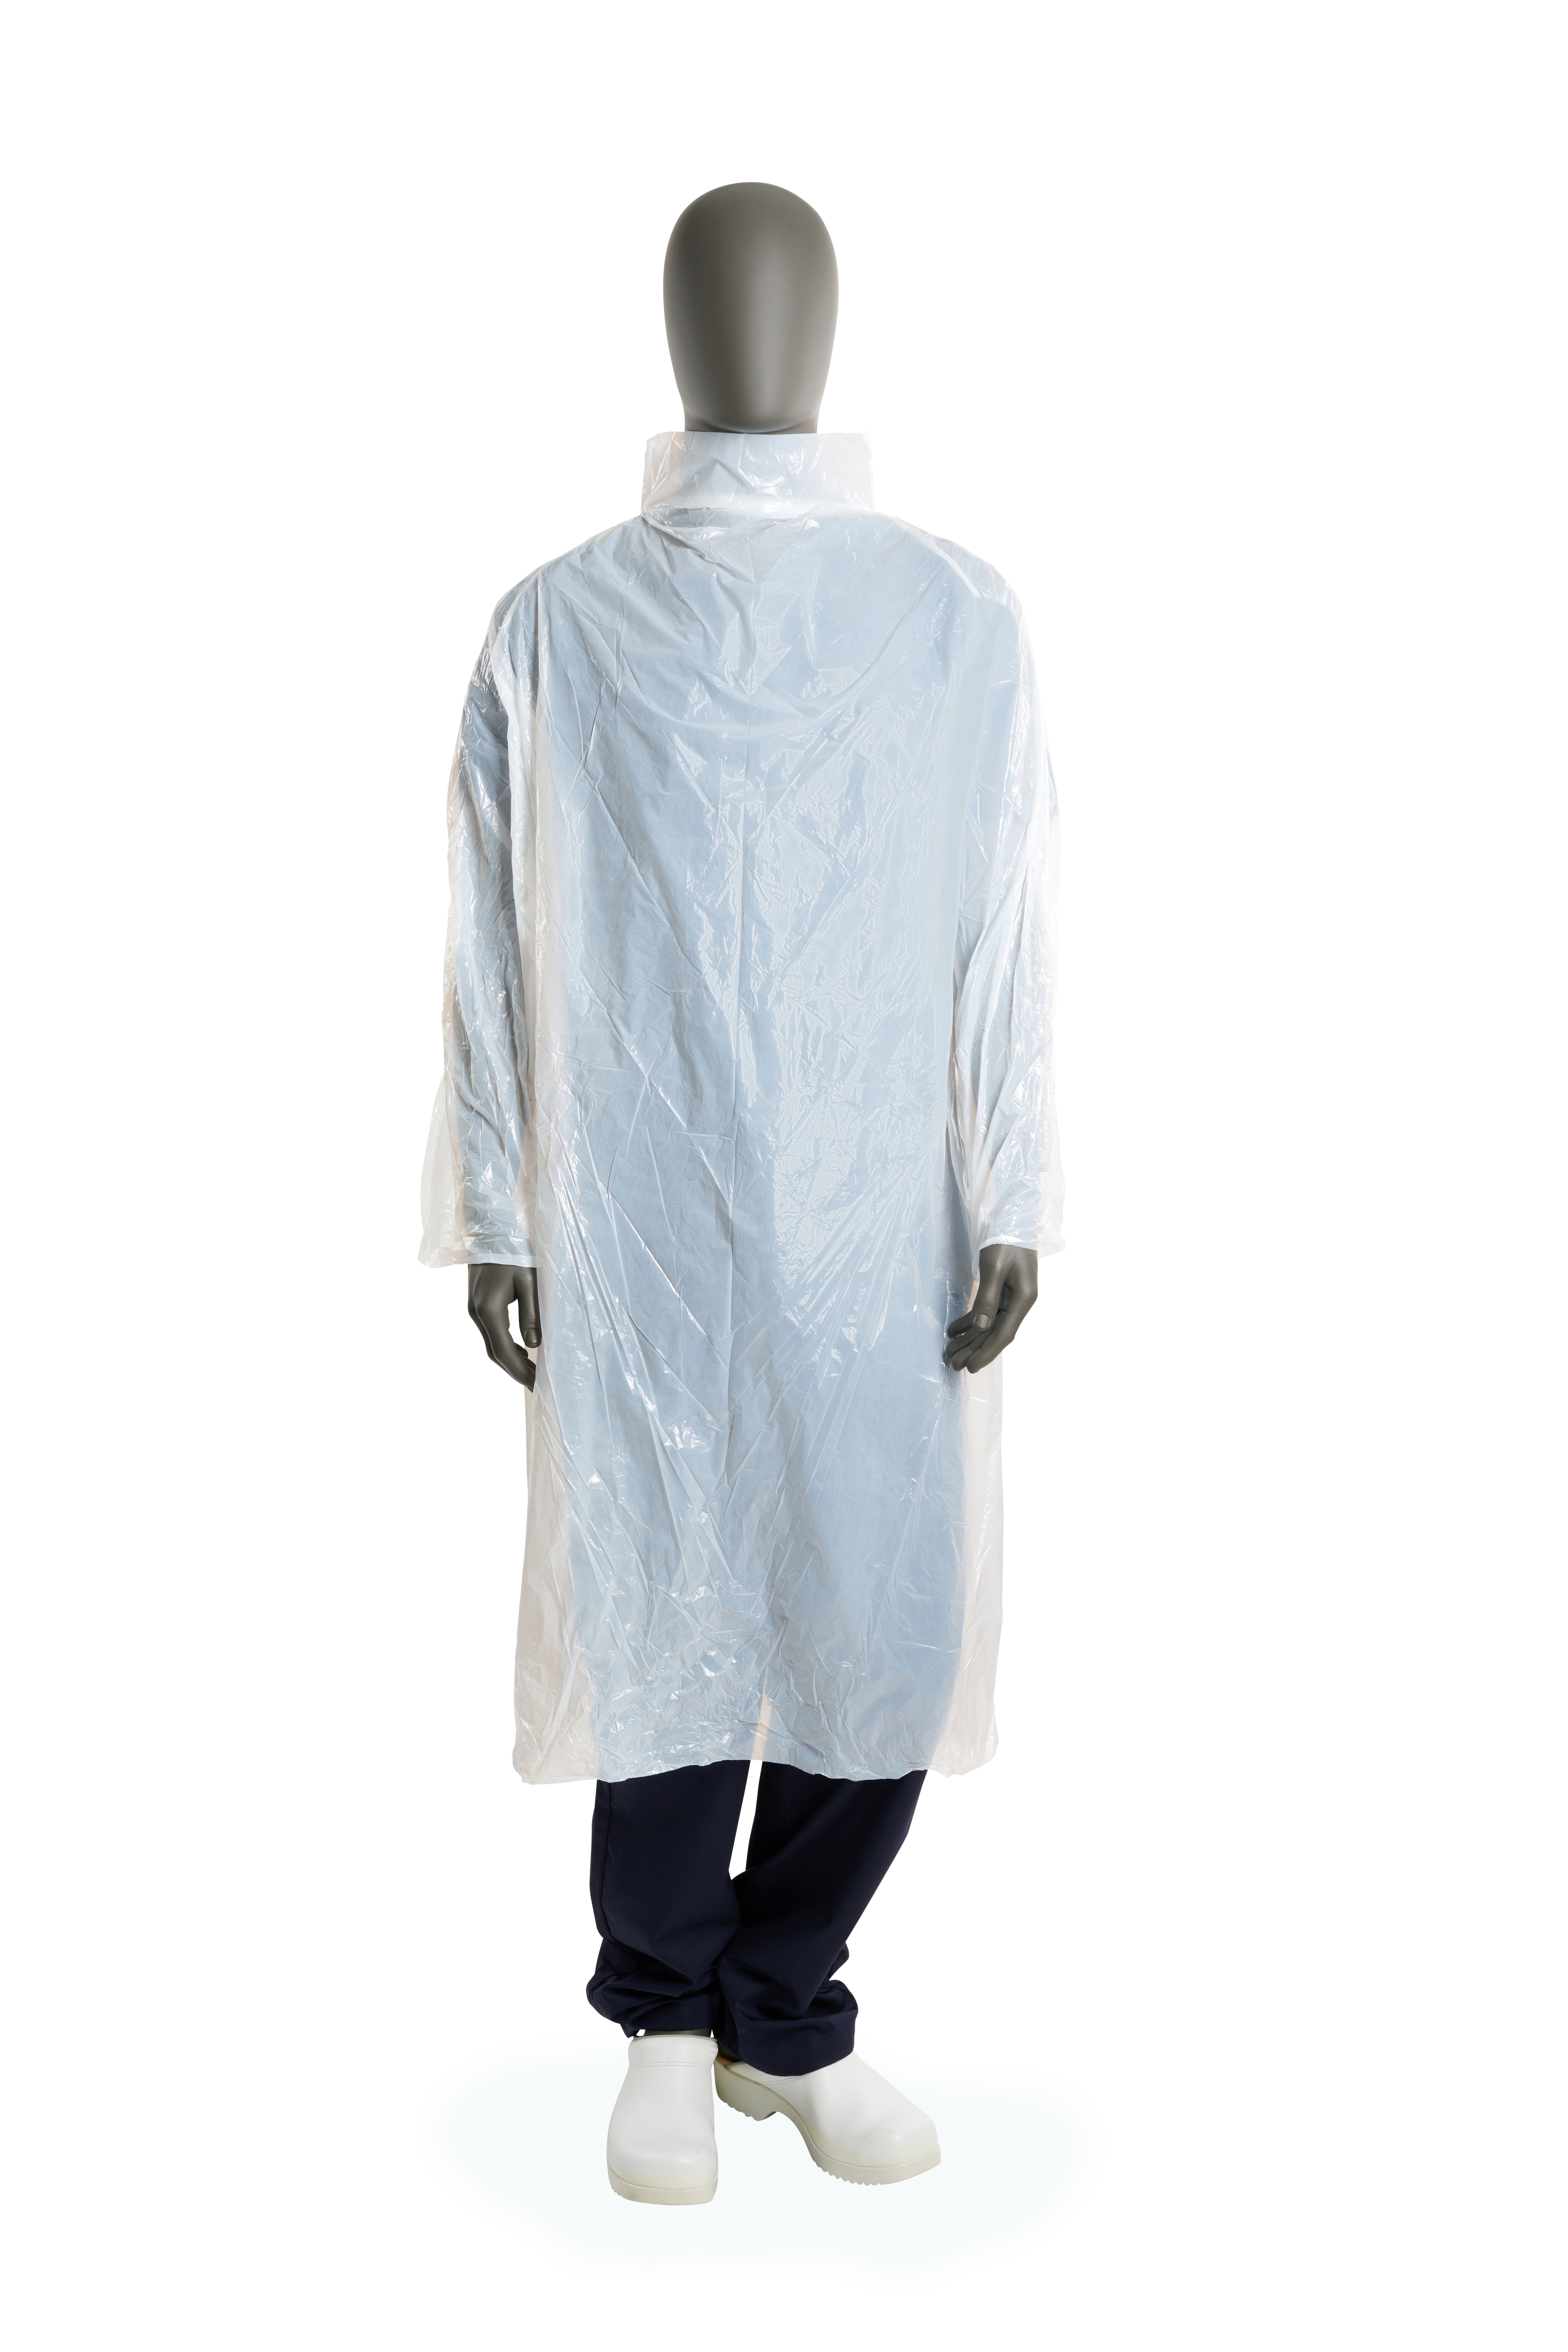 KRUTEX disposable gown 120 cm